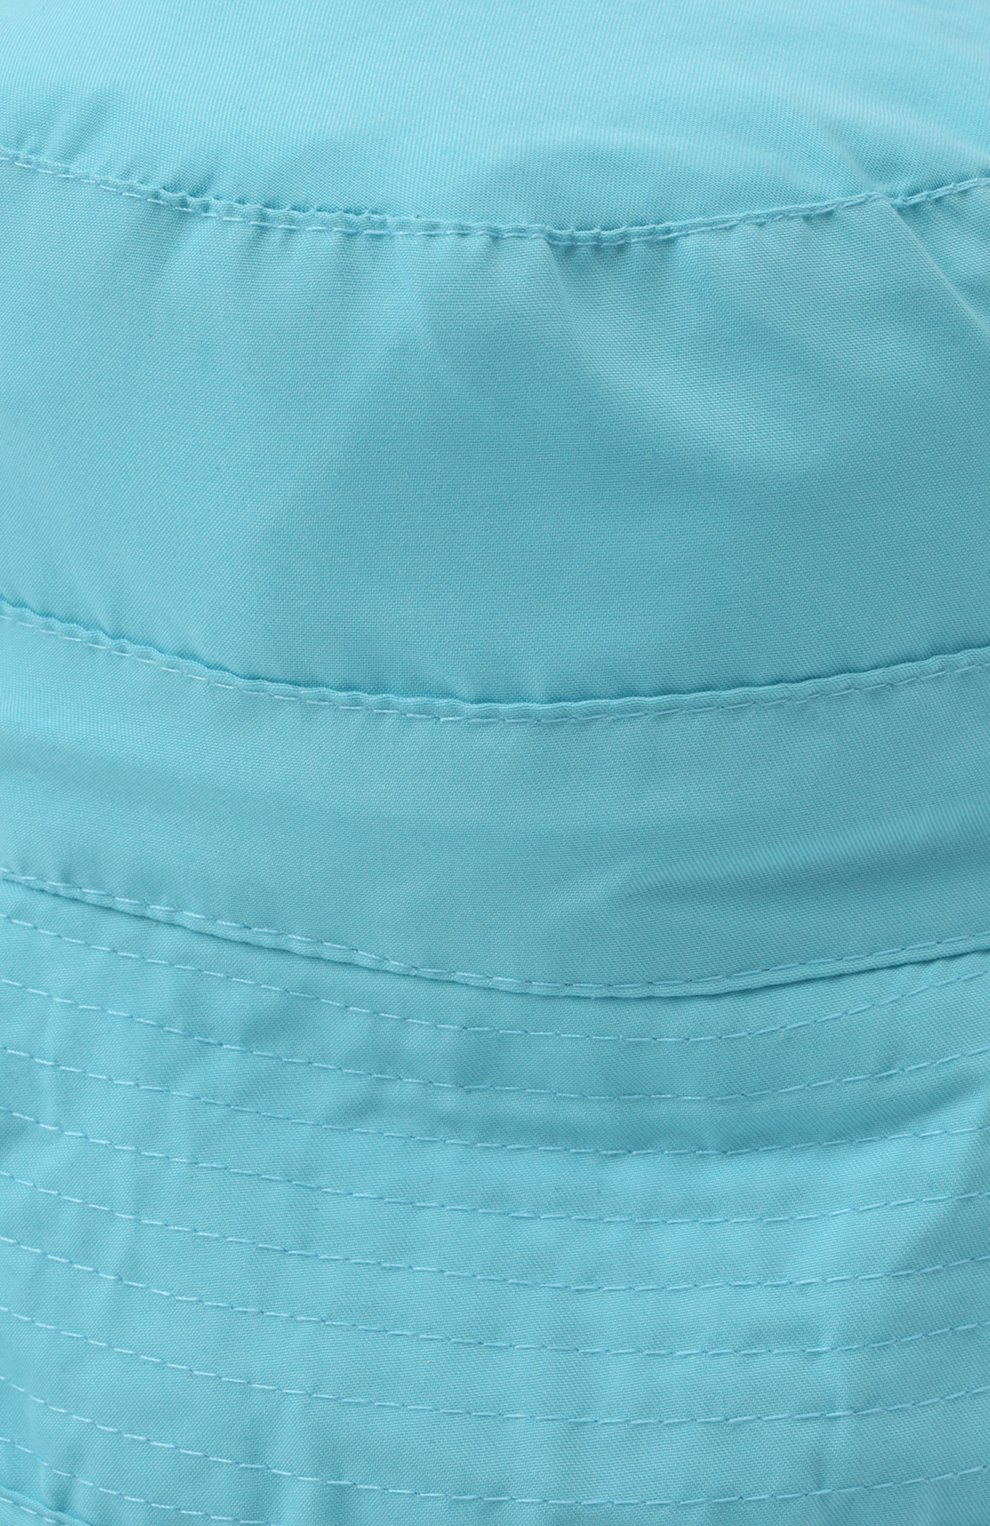 Детская панама SNAPPER ROCK голубого цвета, арт. 616 | Фото 3 (Материал: Текстиль, Синтетический материал)